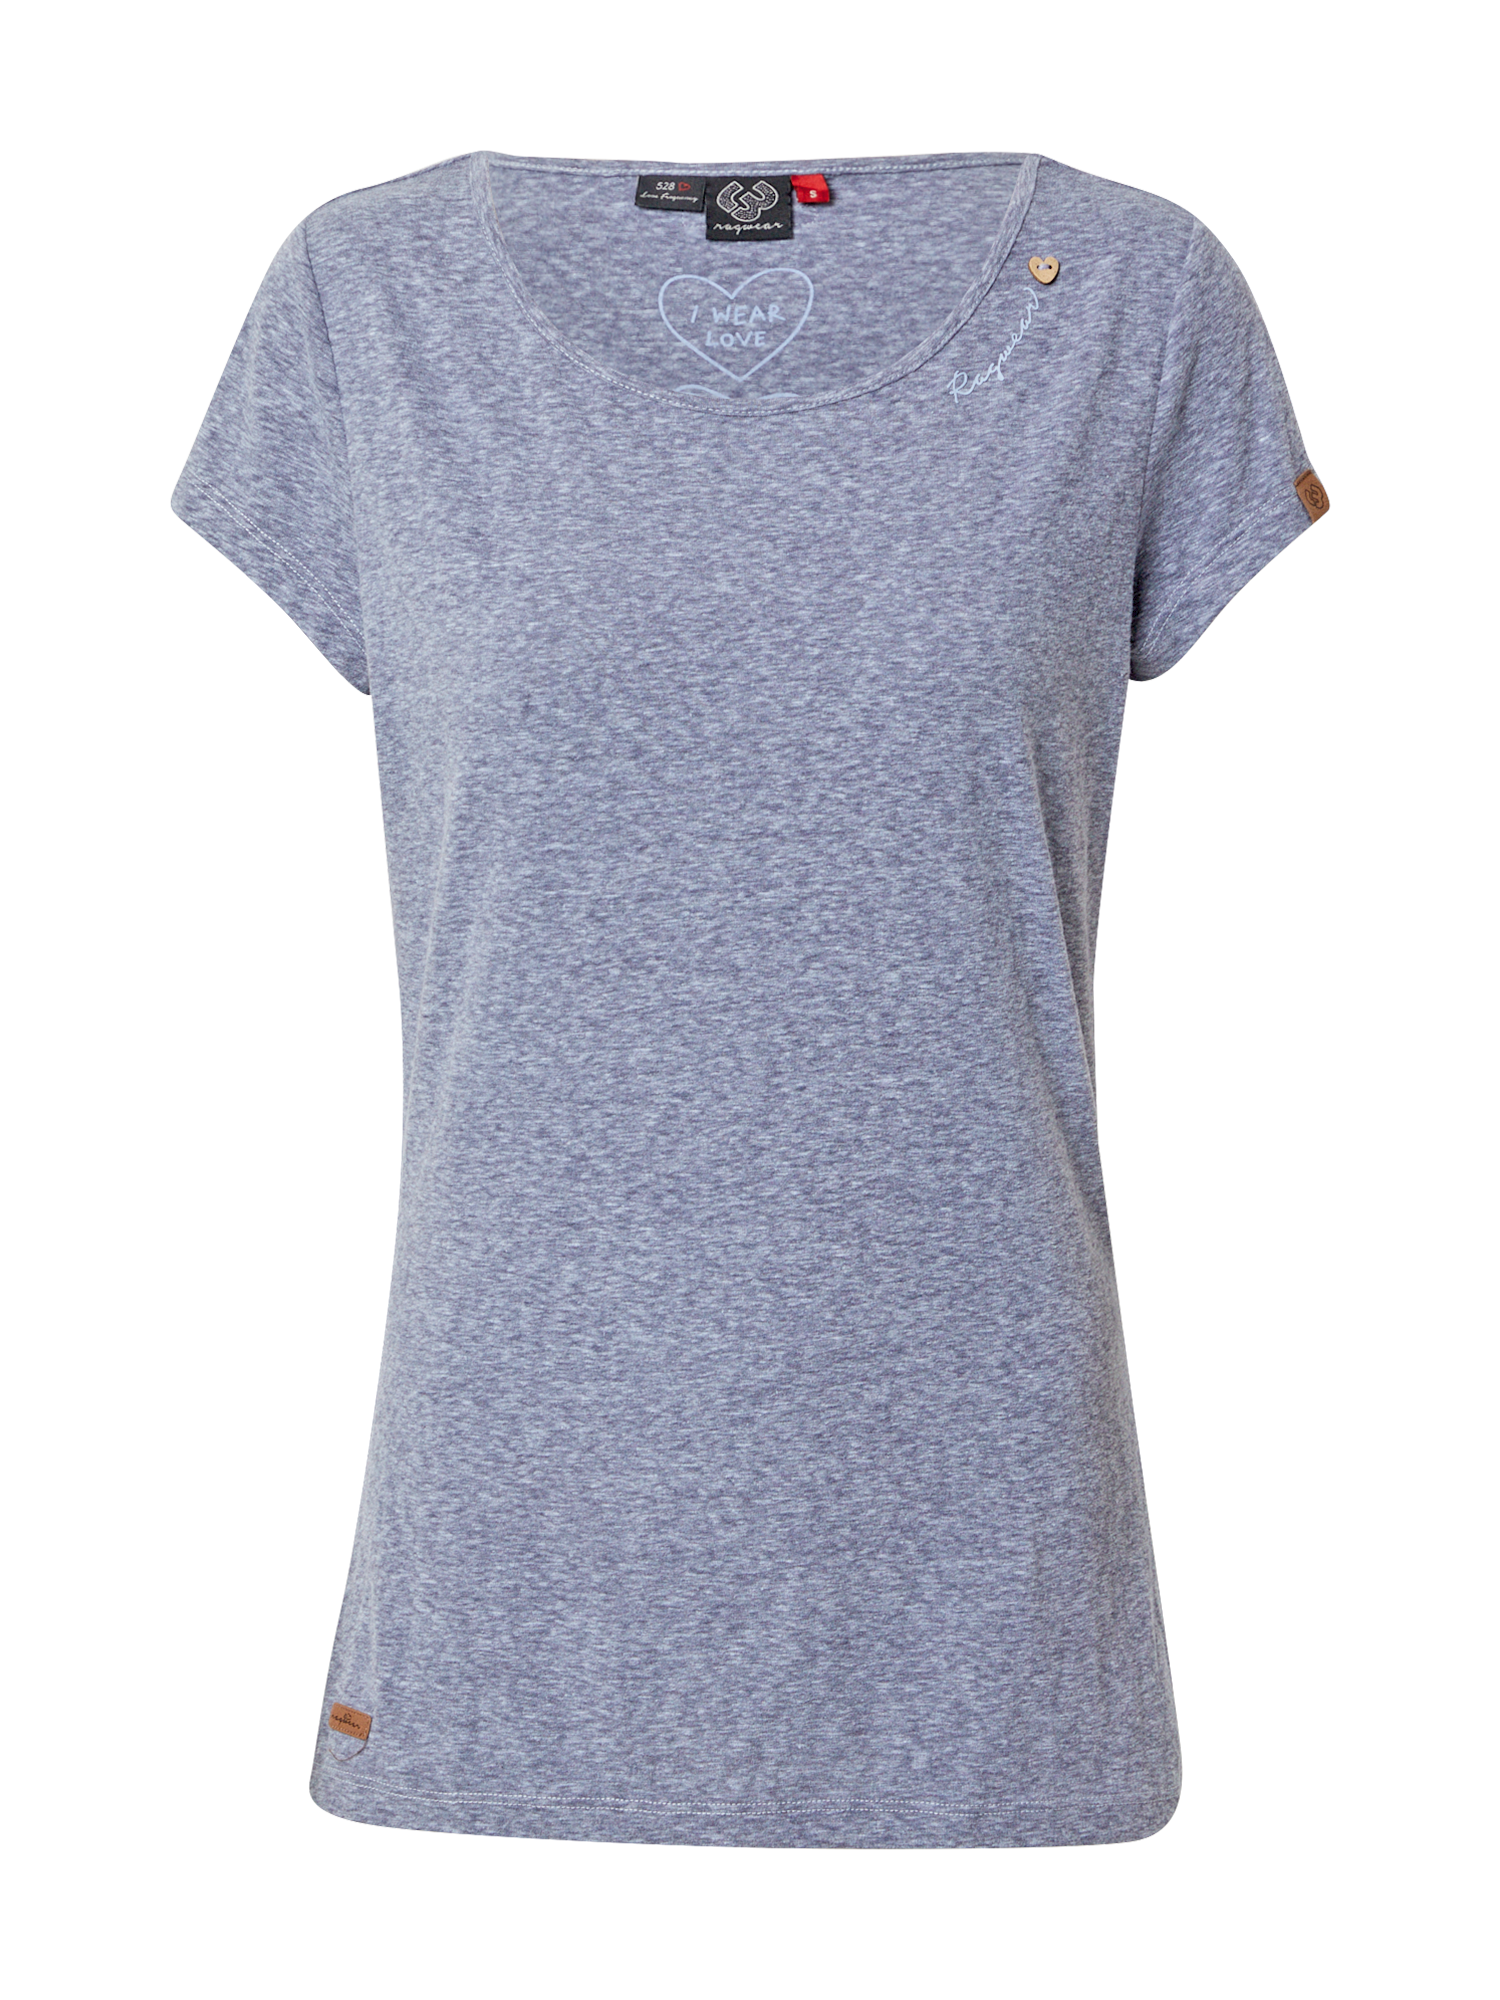 Kobiety Odzież Ragwear Koszulka MINT w kolorze Gołąbkowo Niebieskim 